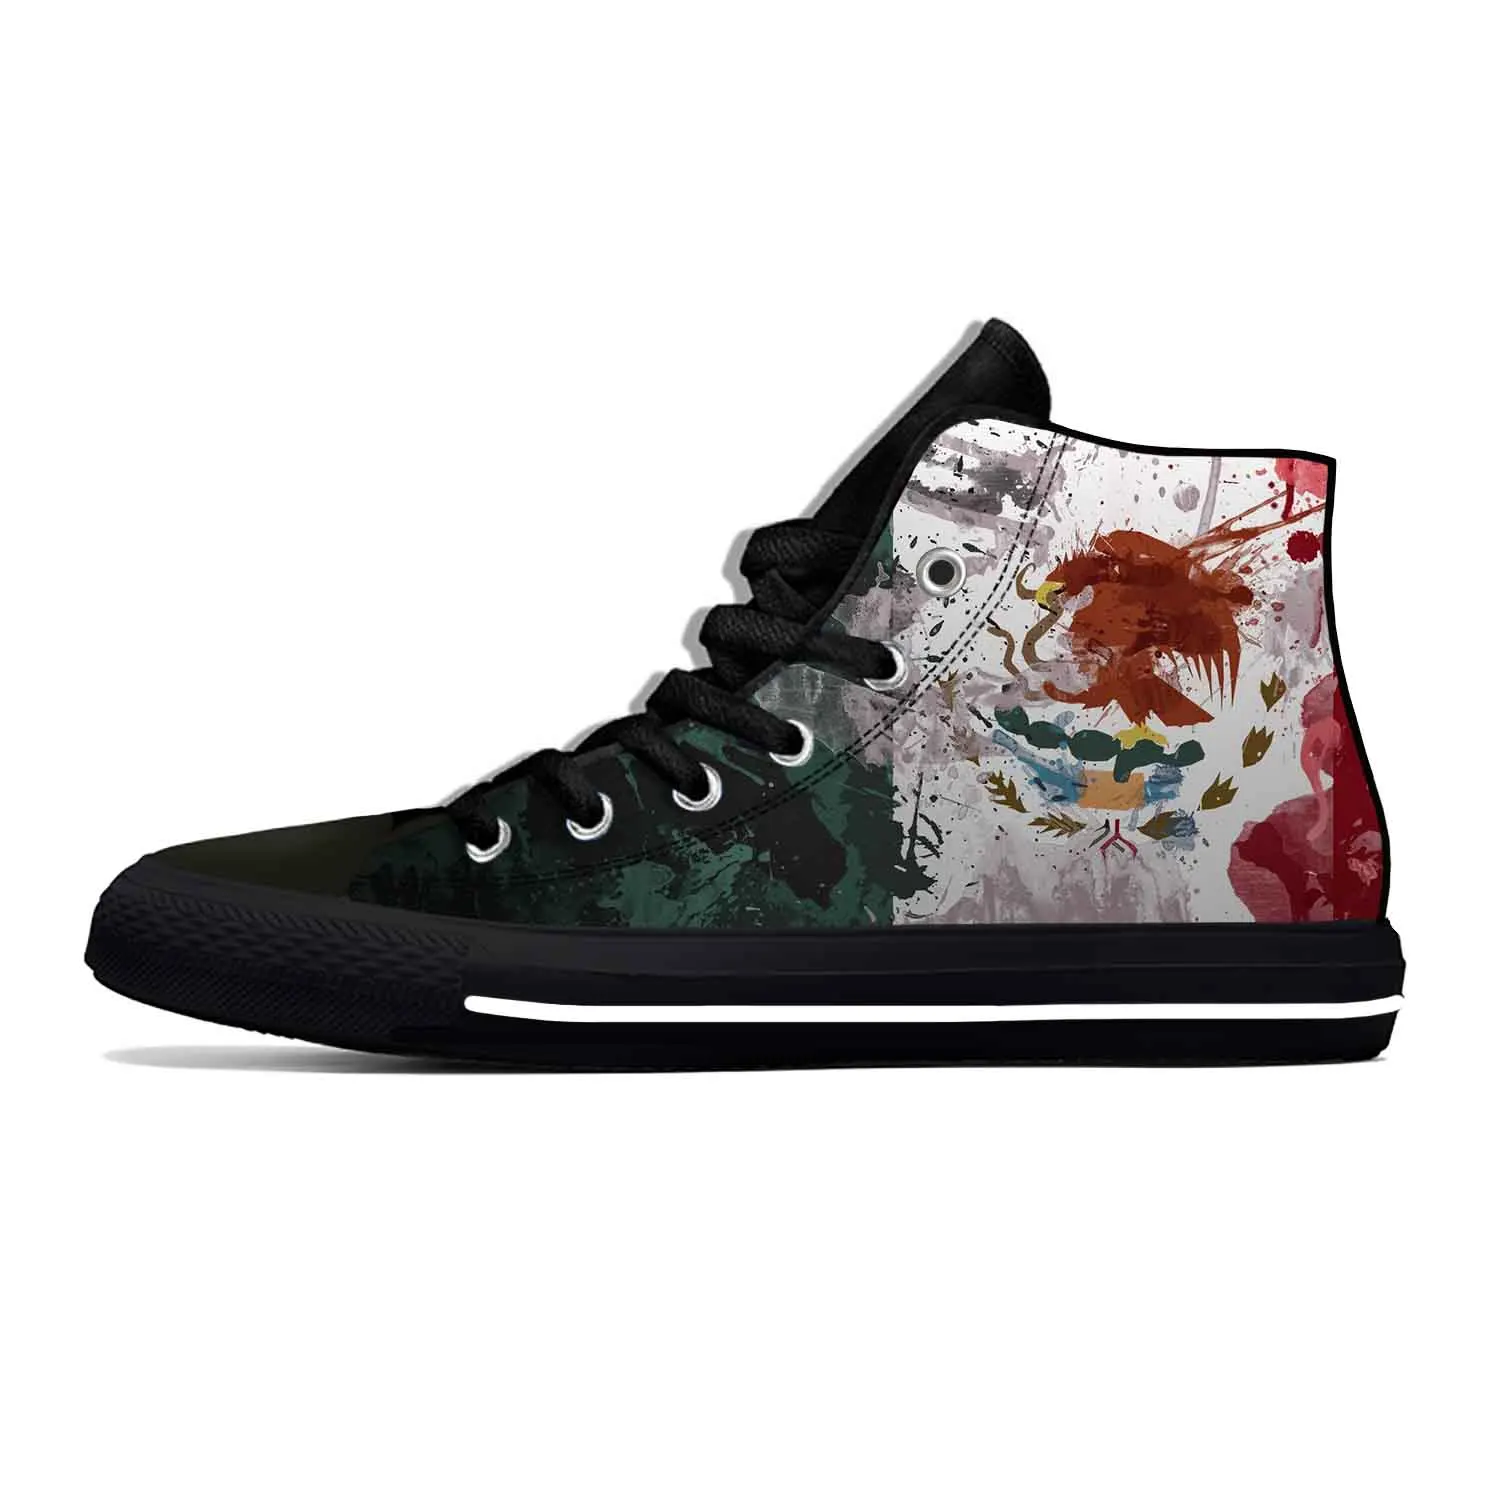 Meksiko, meksički zastava, патриотическая ponos, funky zabavna svakodnevni tkiva cipele s visokim берцем, udoban prozračna muške i ženske tenisice s 3D ispis